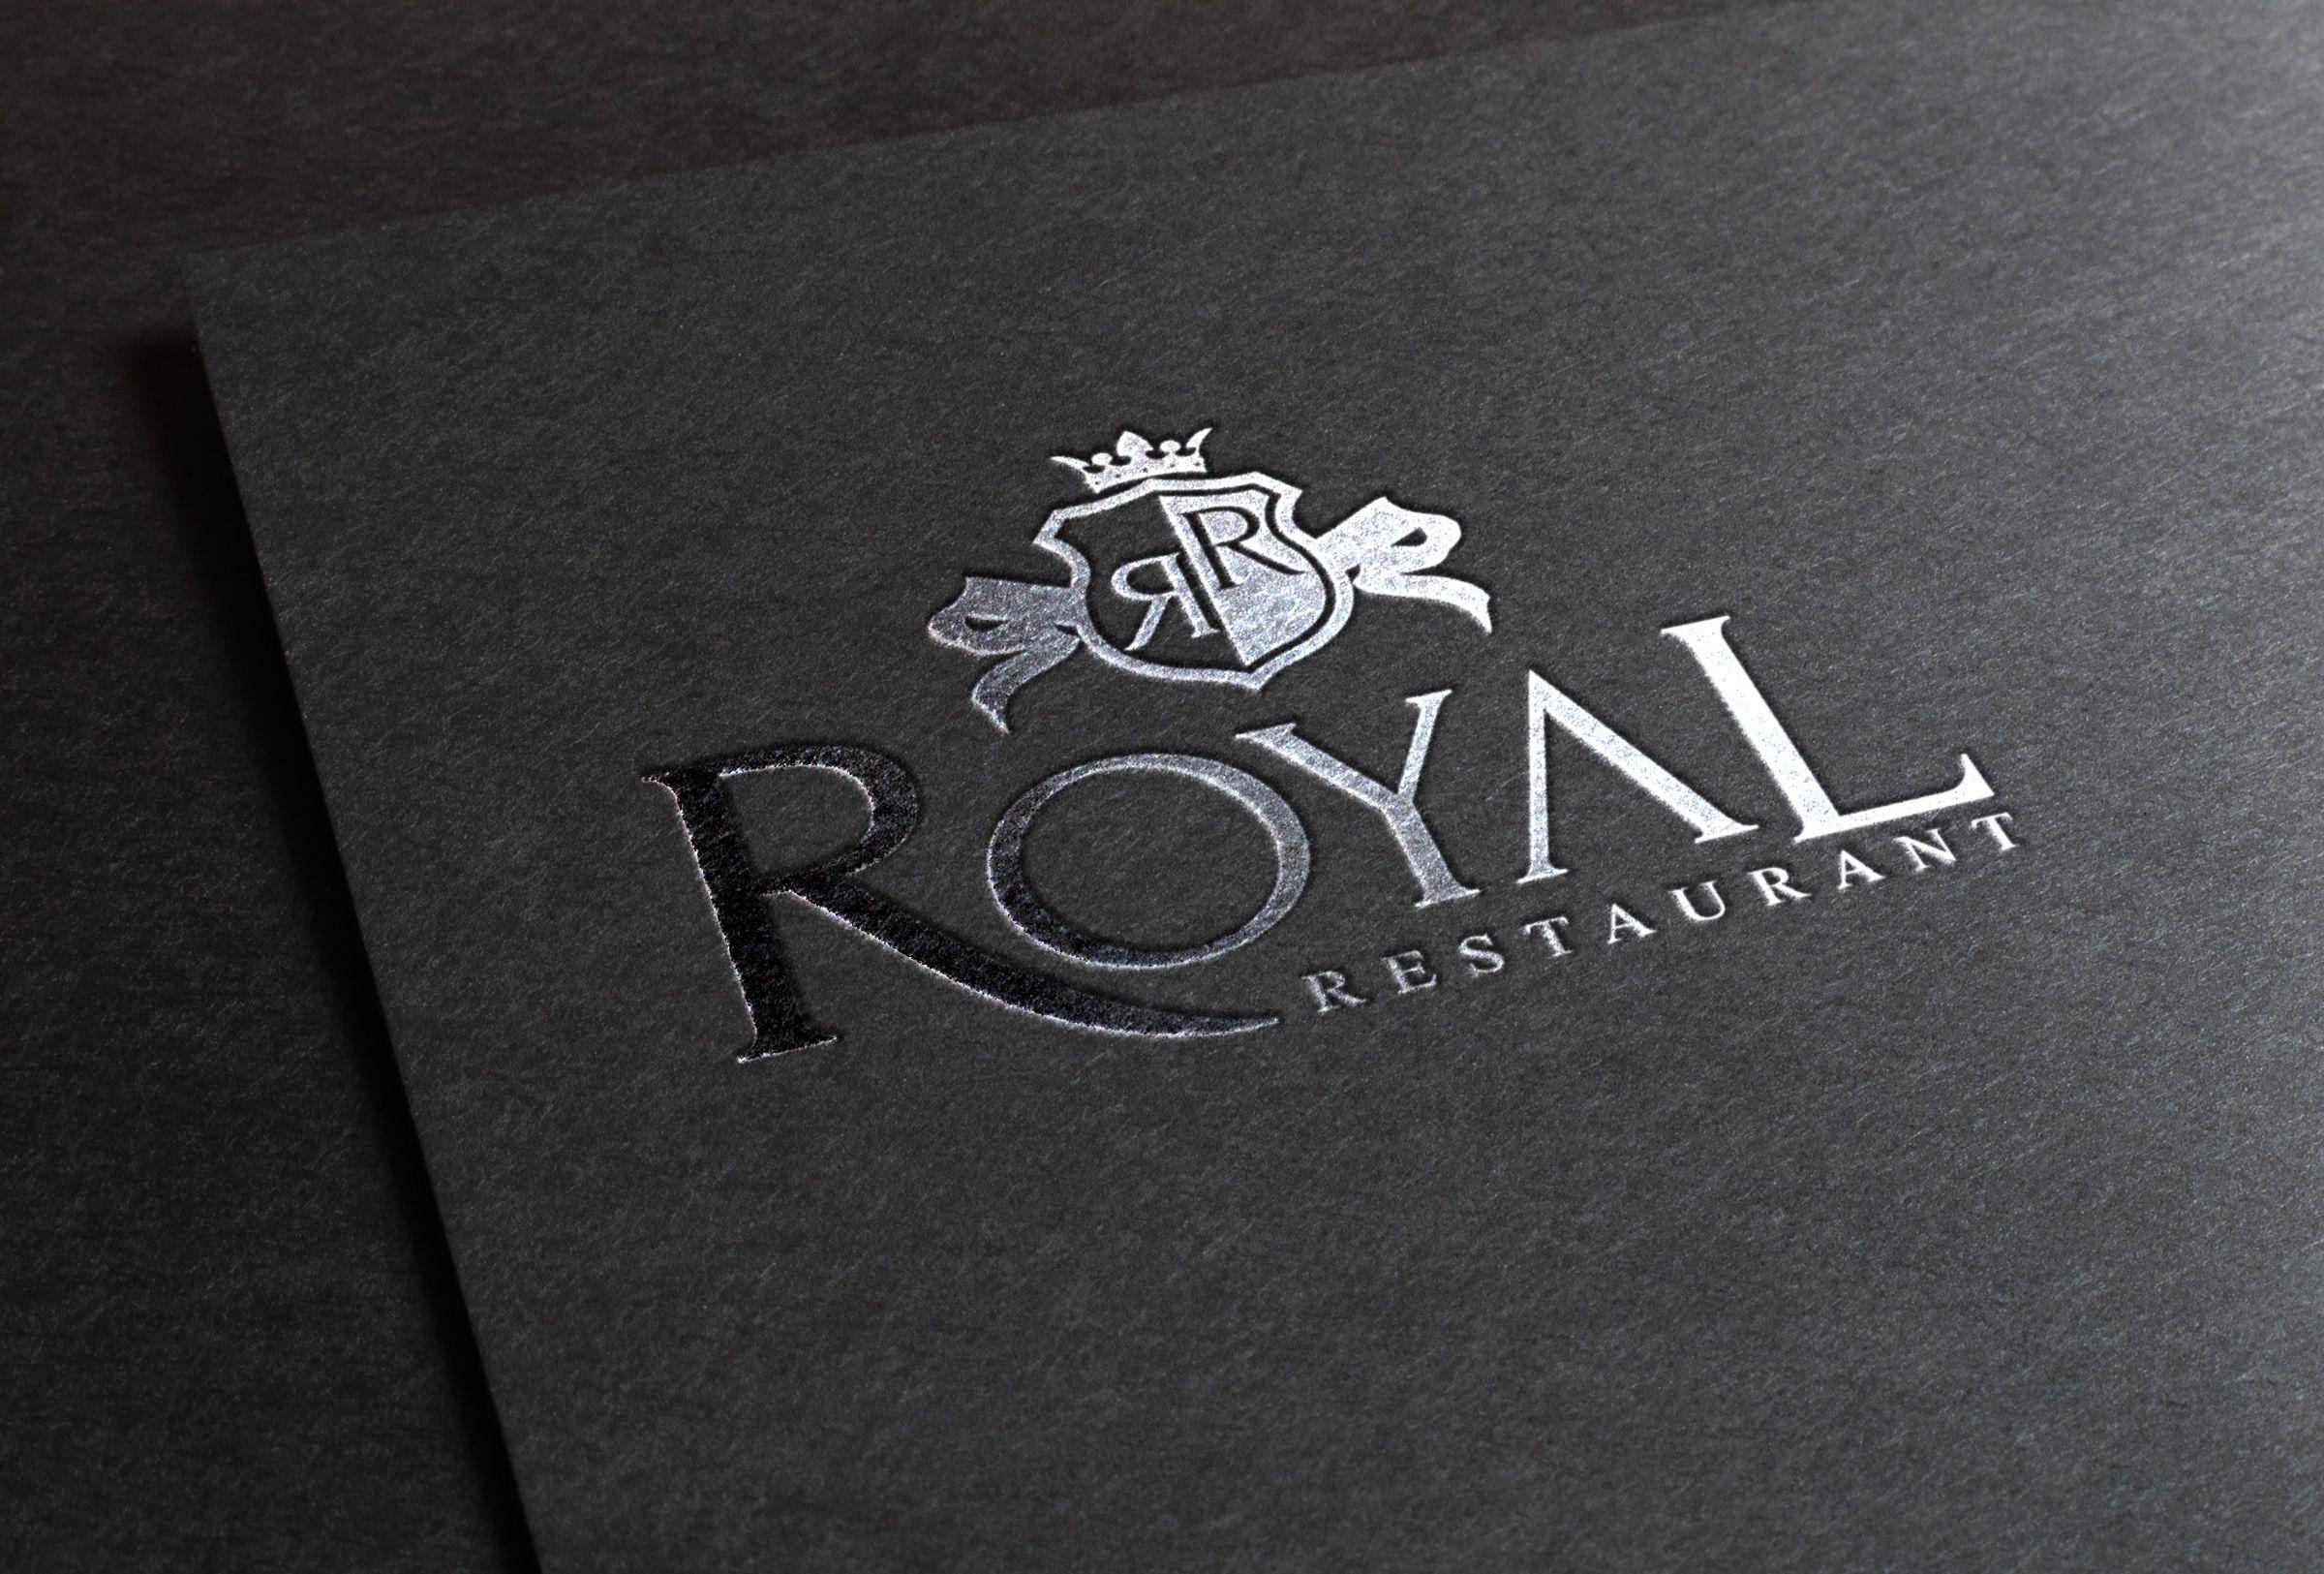 Restaurant Royal Residence